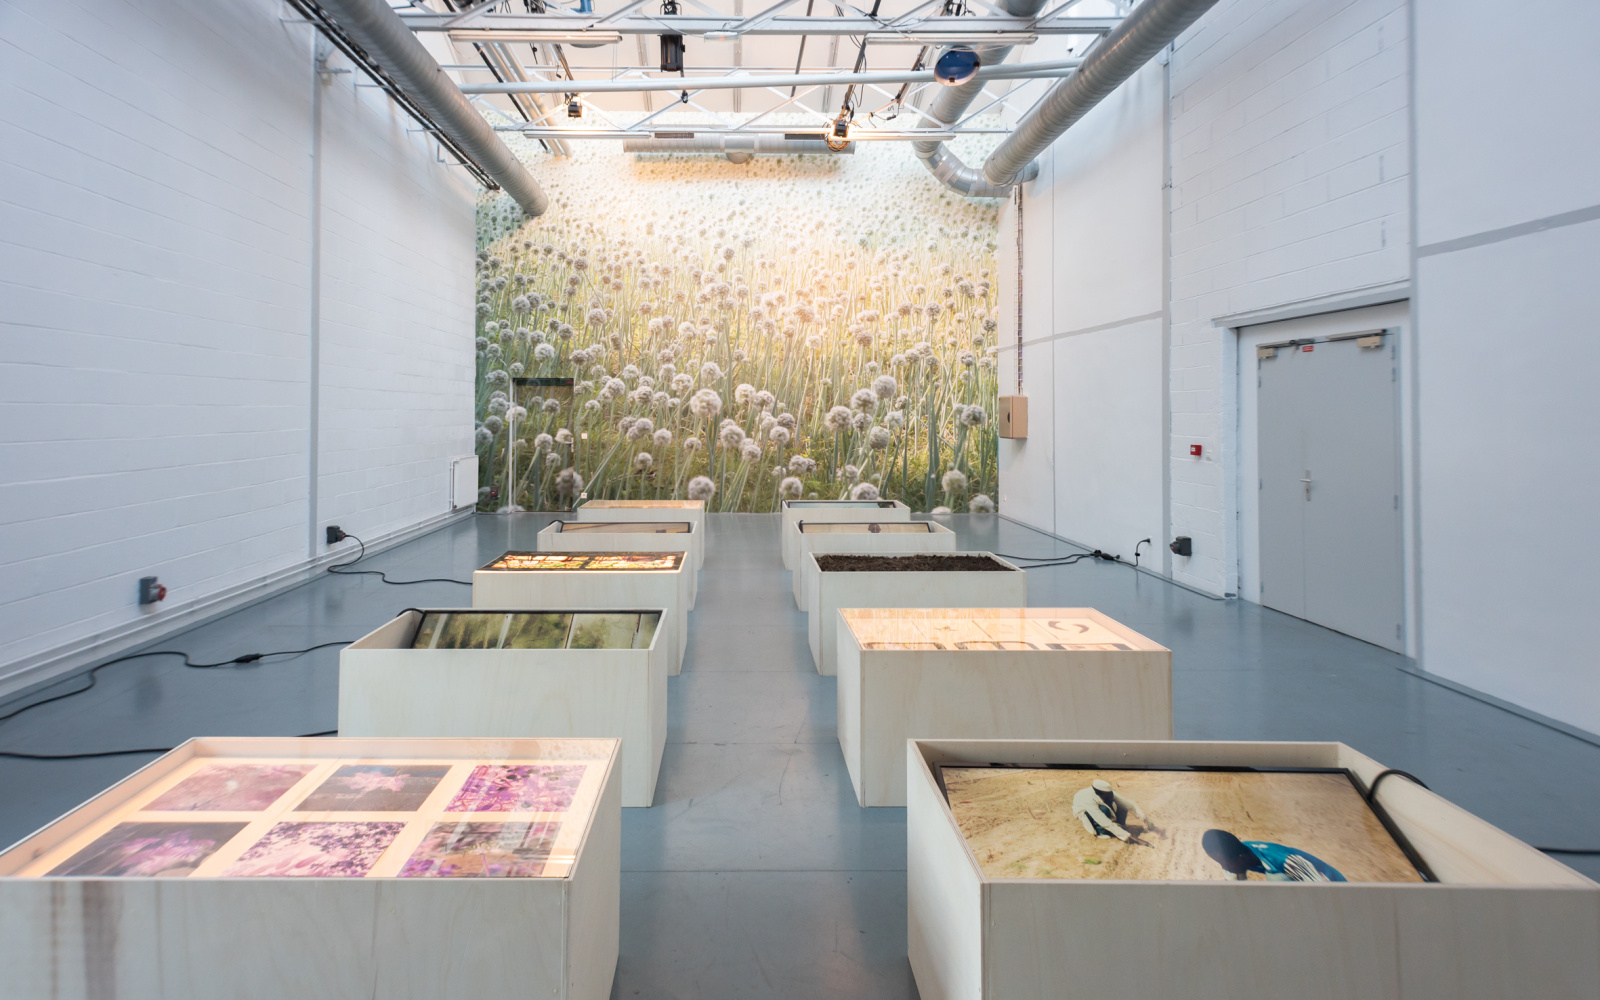 Foto eines Ausstellungsraums mit großem Foto-Print einer Wiese im Hintergrund und weißen Podesten mit Ausstellungsobjekten im Vordergrund.